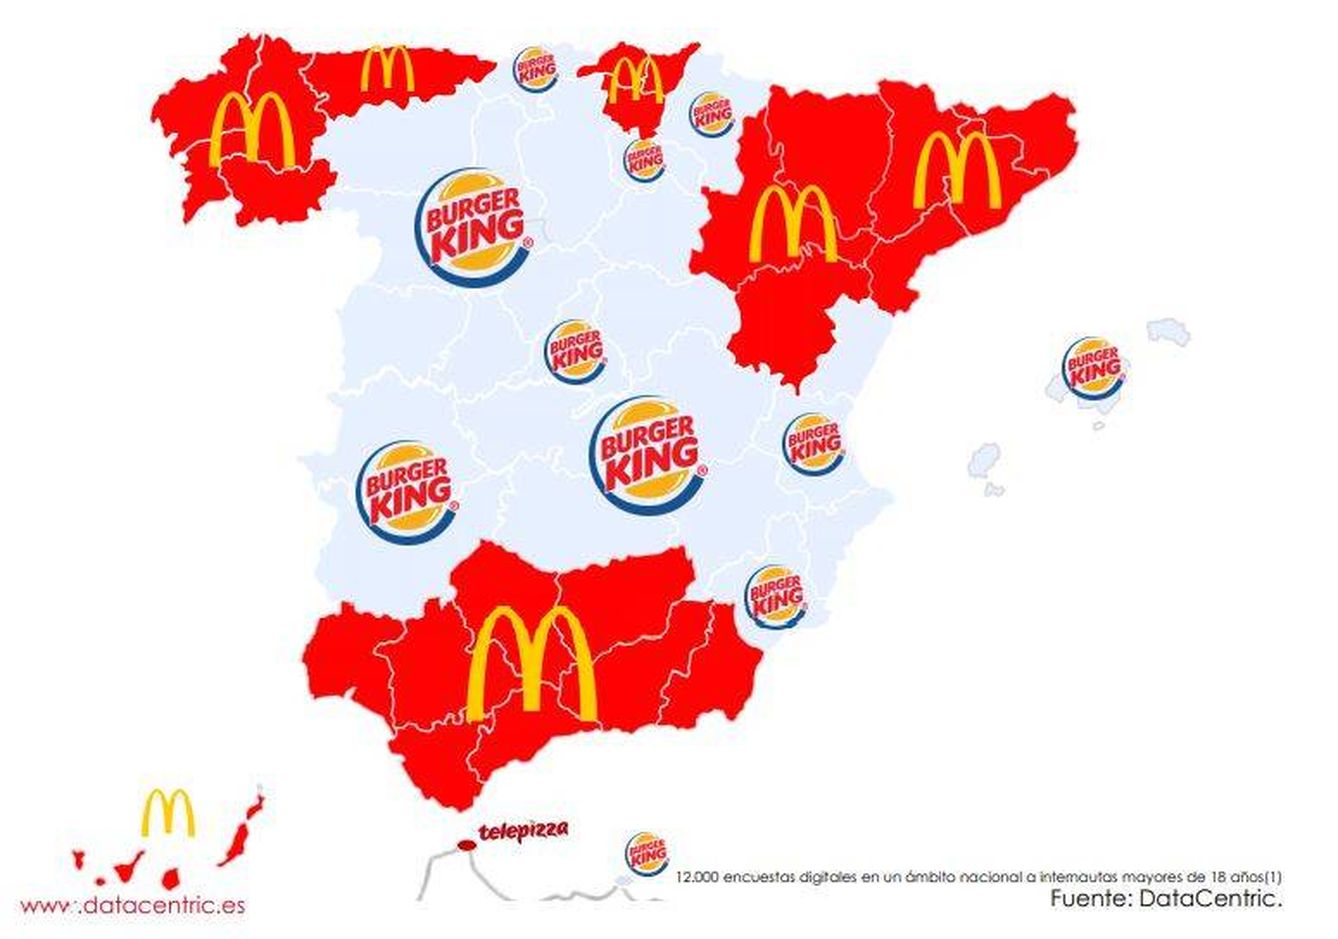 Las marcas de comida rápida que prefieren los españoles .(DataCentric)